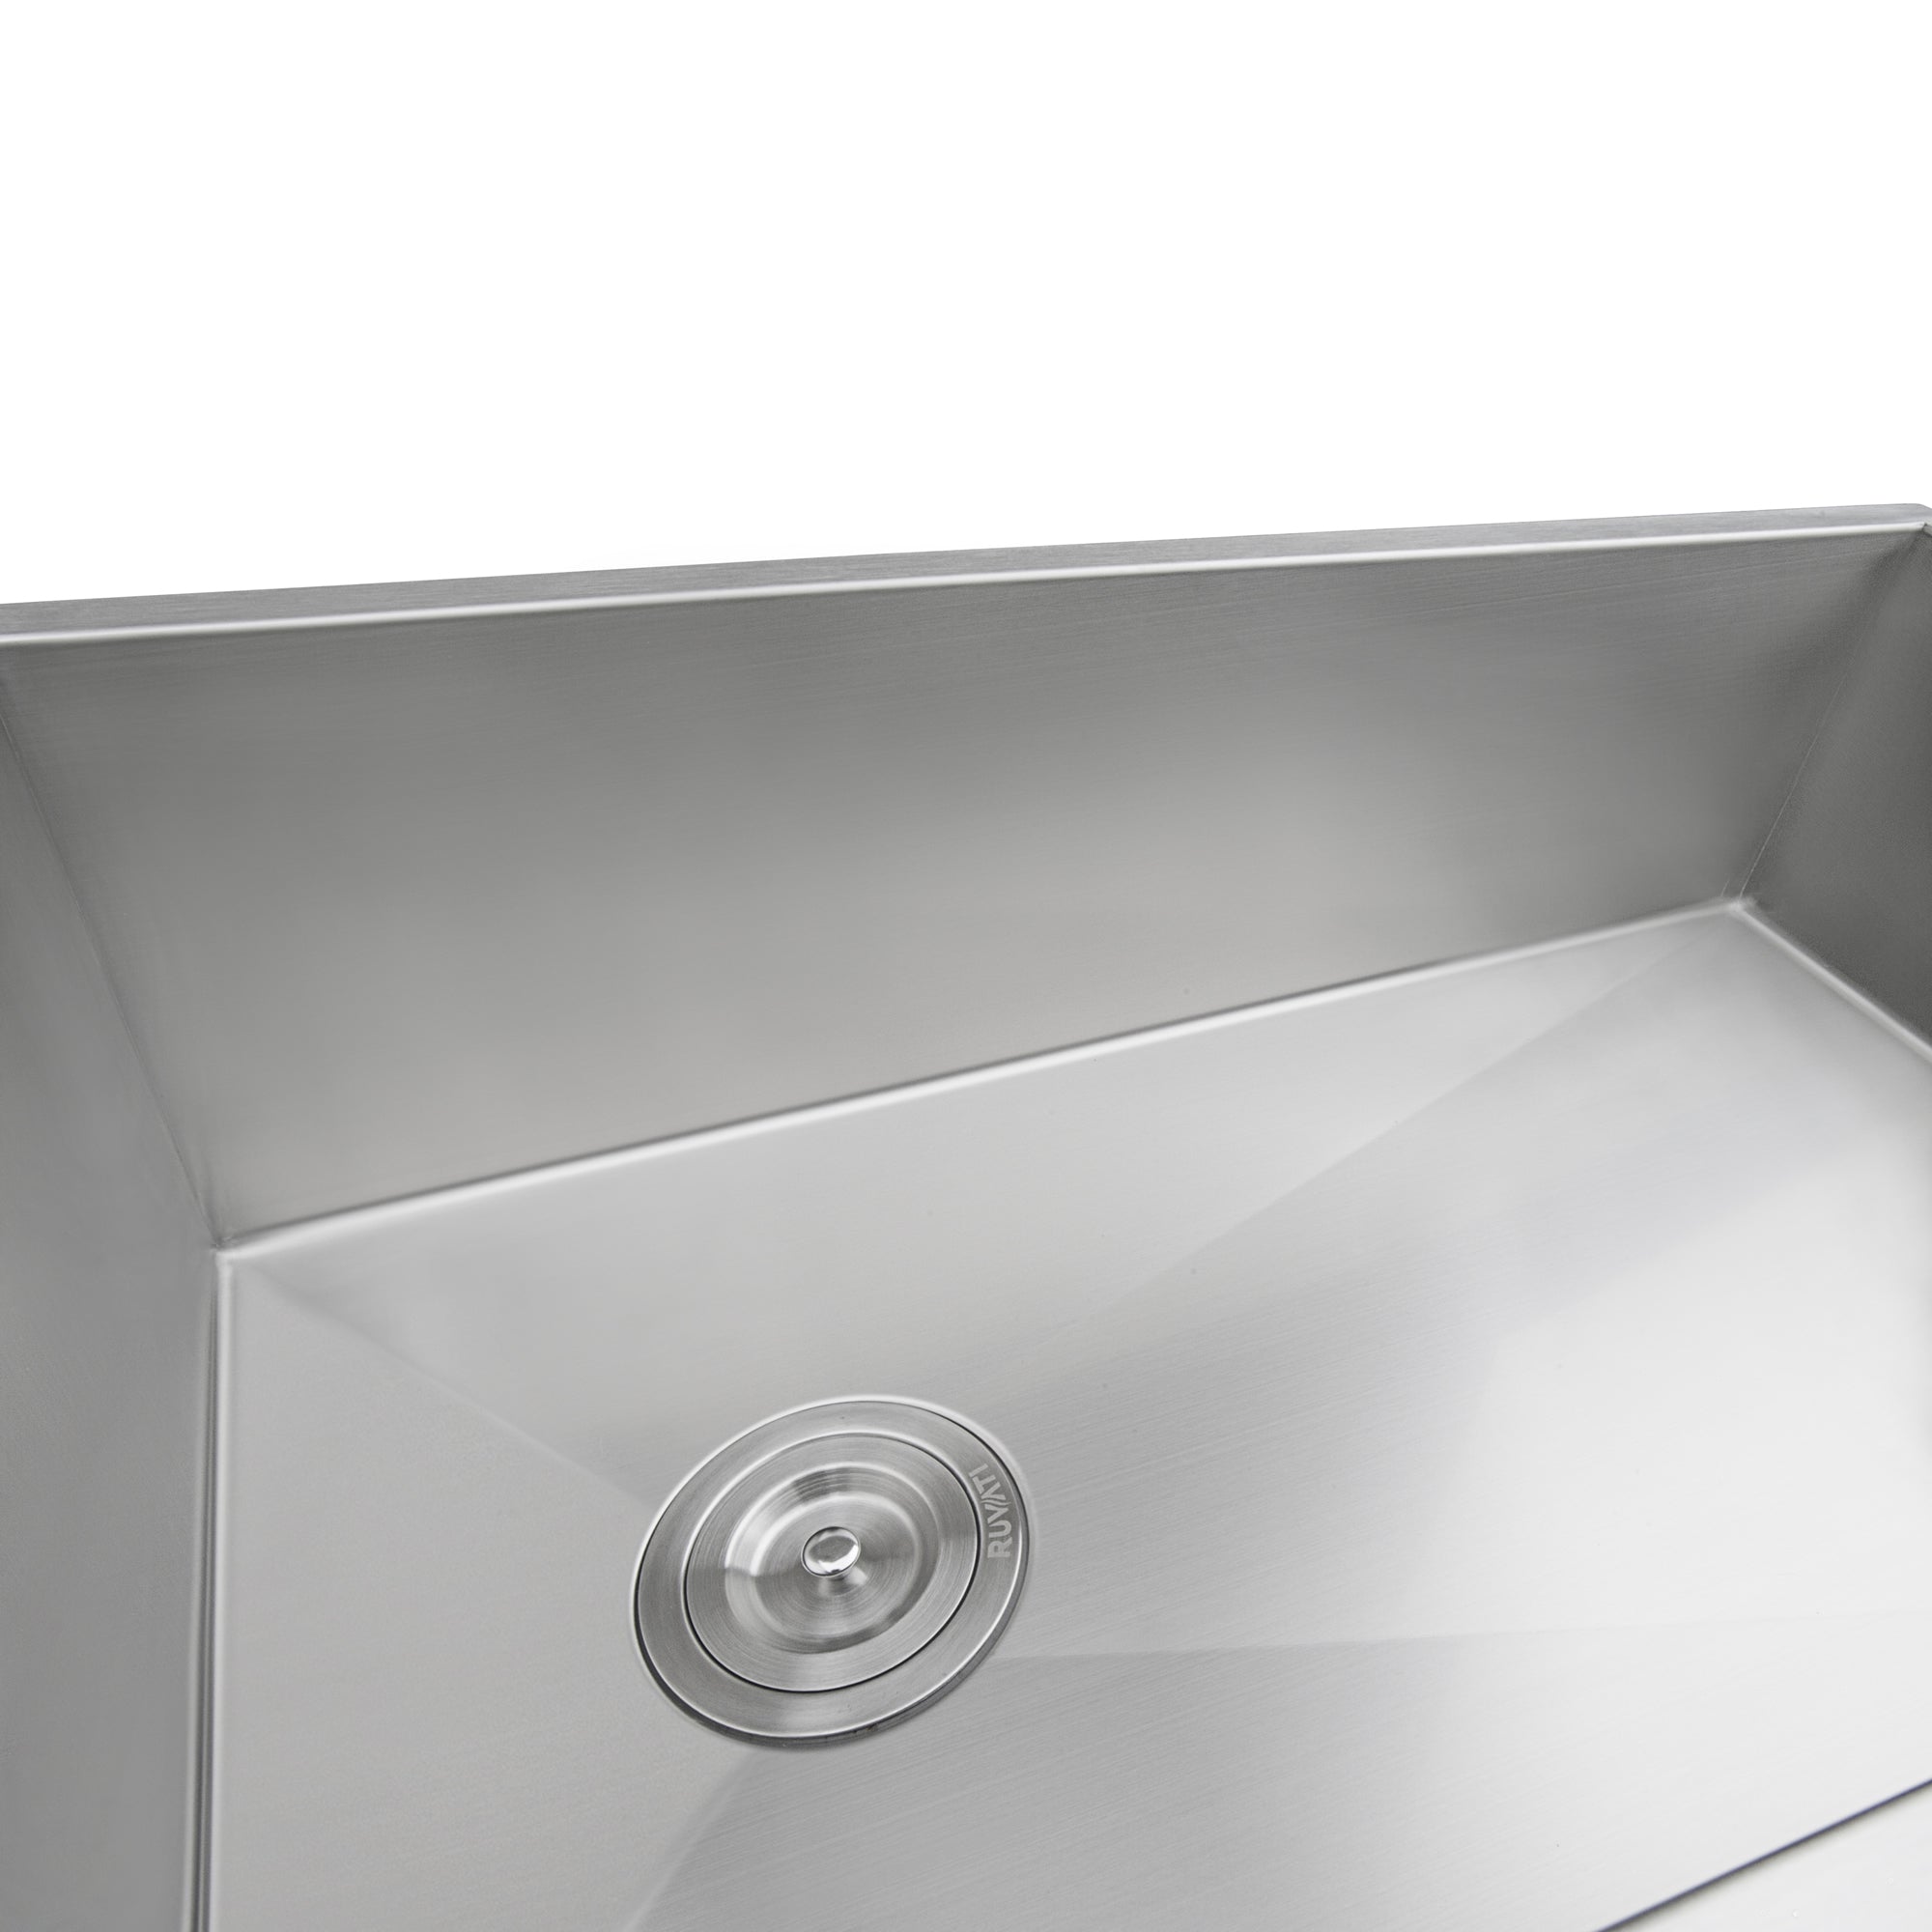 Ruvati 27" Slope Bottom Offset Drain Undermount Single Bowl Kitchen Sink Stainless Steel